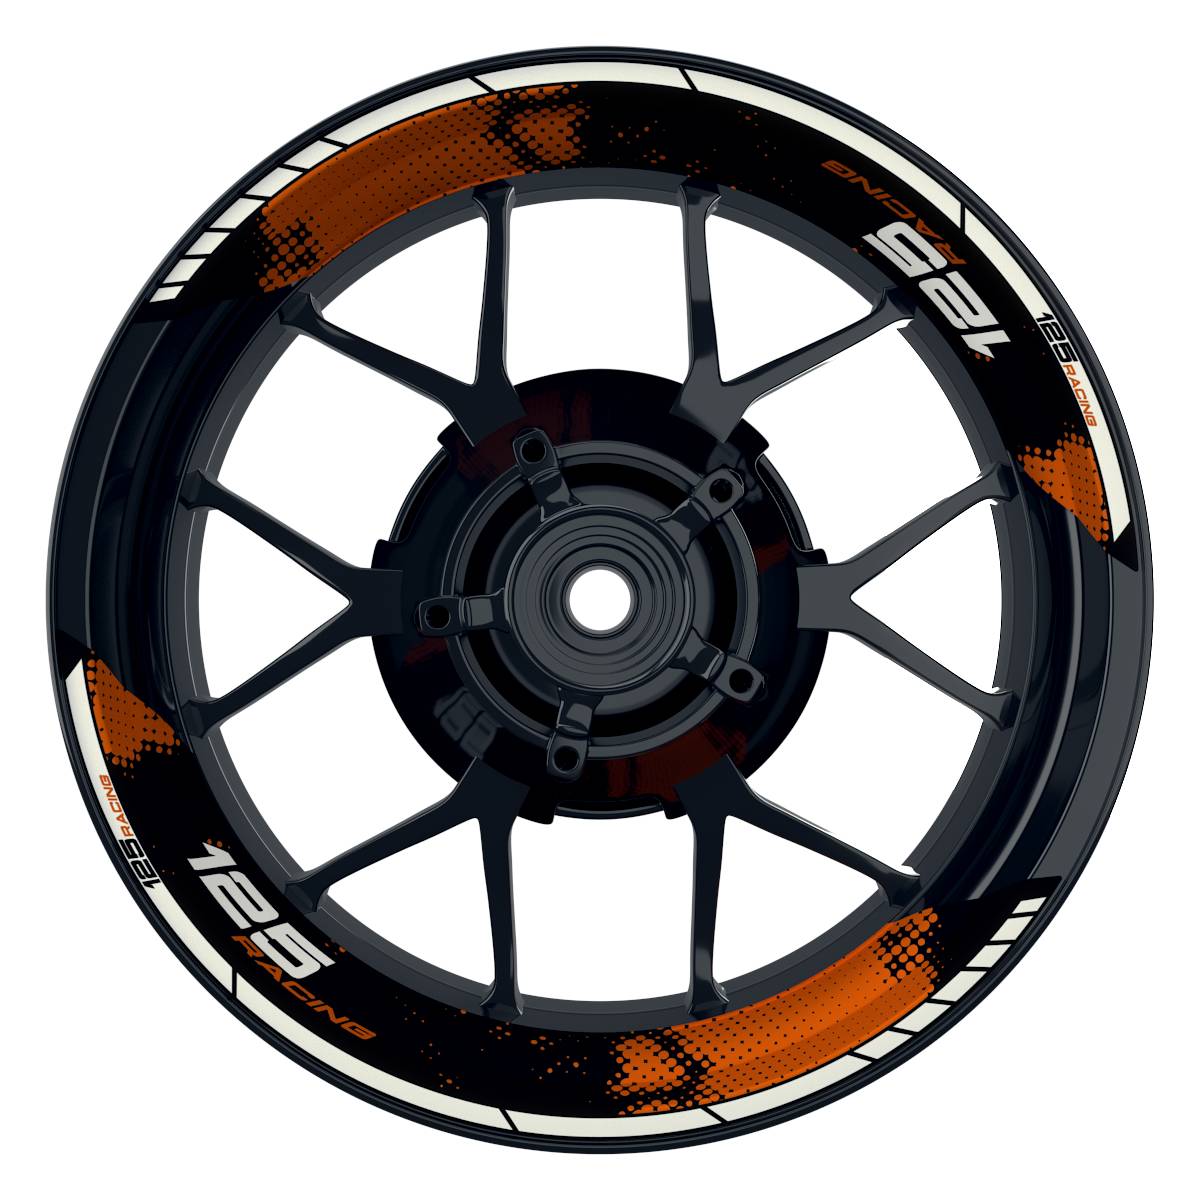 KTM Racing 125 Dots schwarz orange Frontansicht